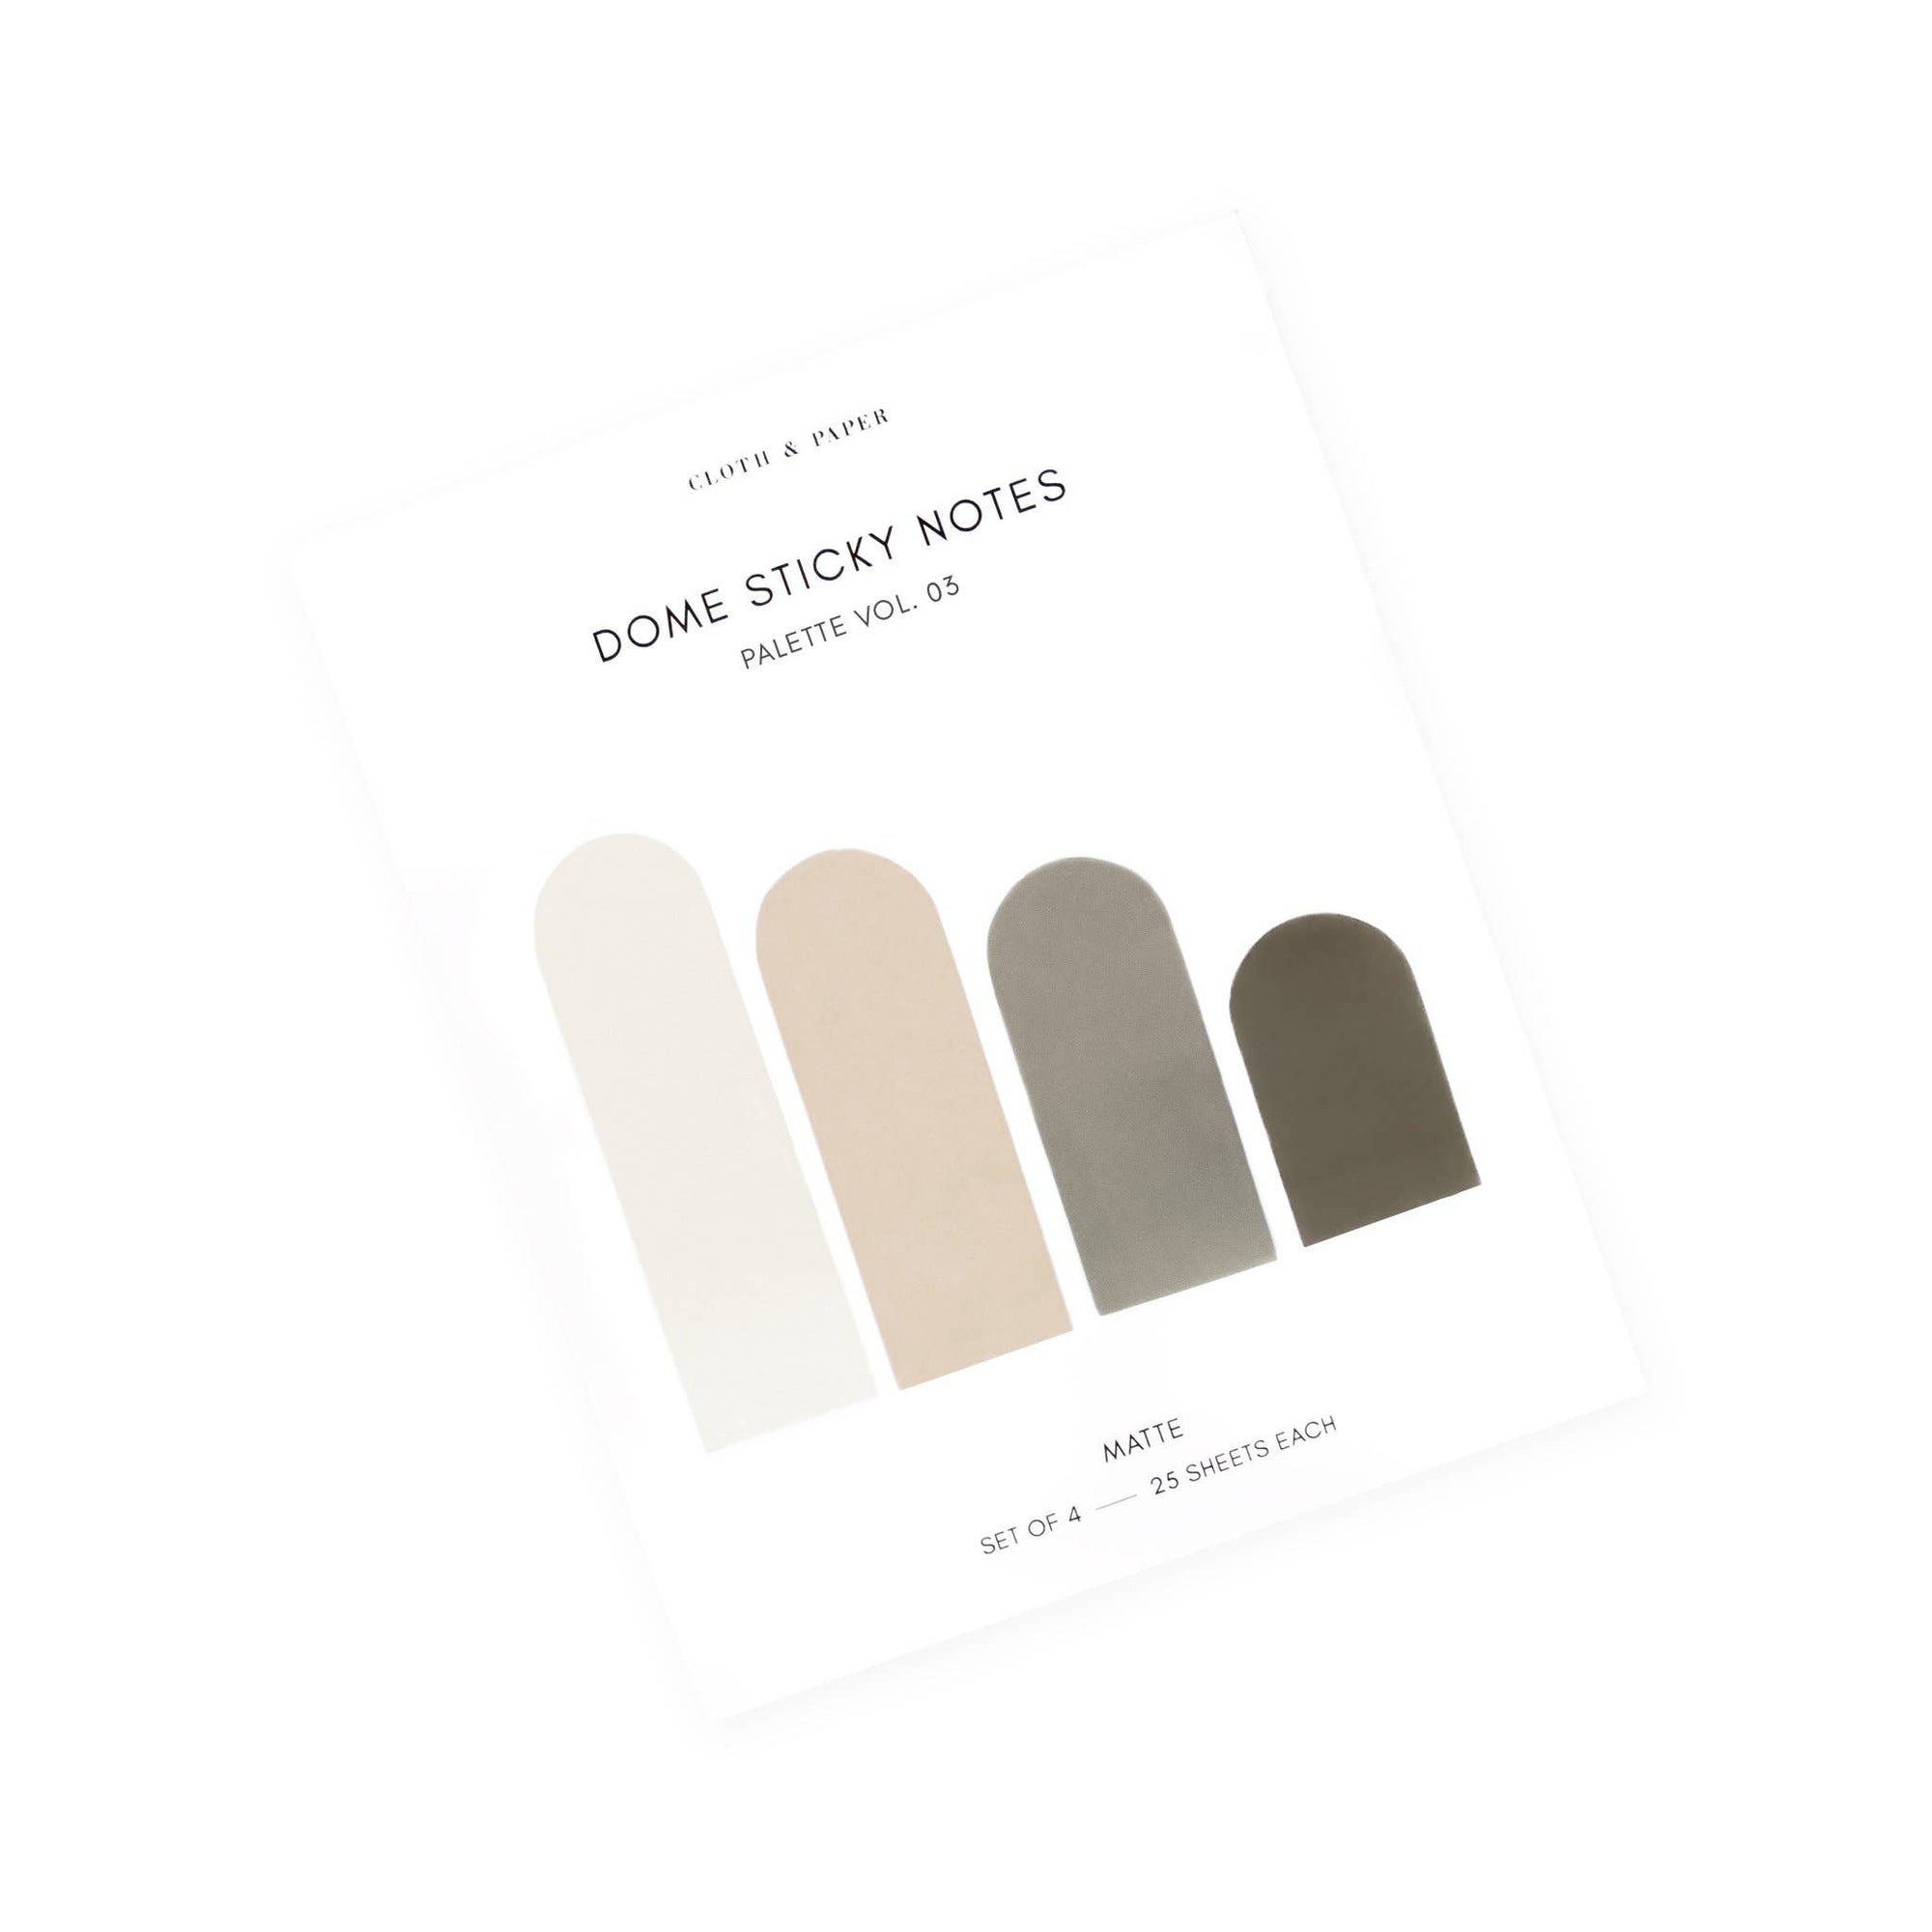 Dome Sticky Notes | Palette Vol. 03